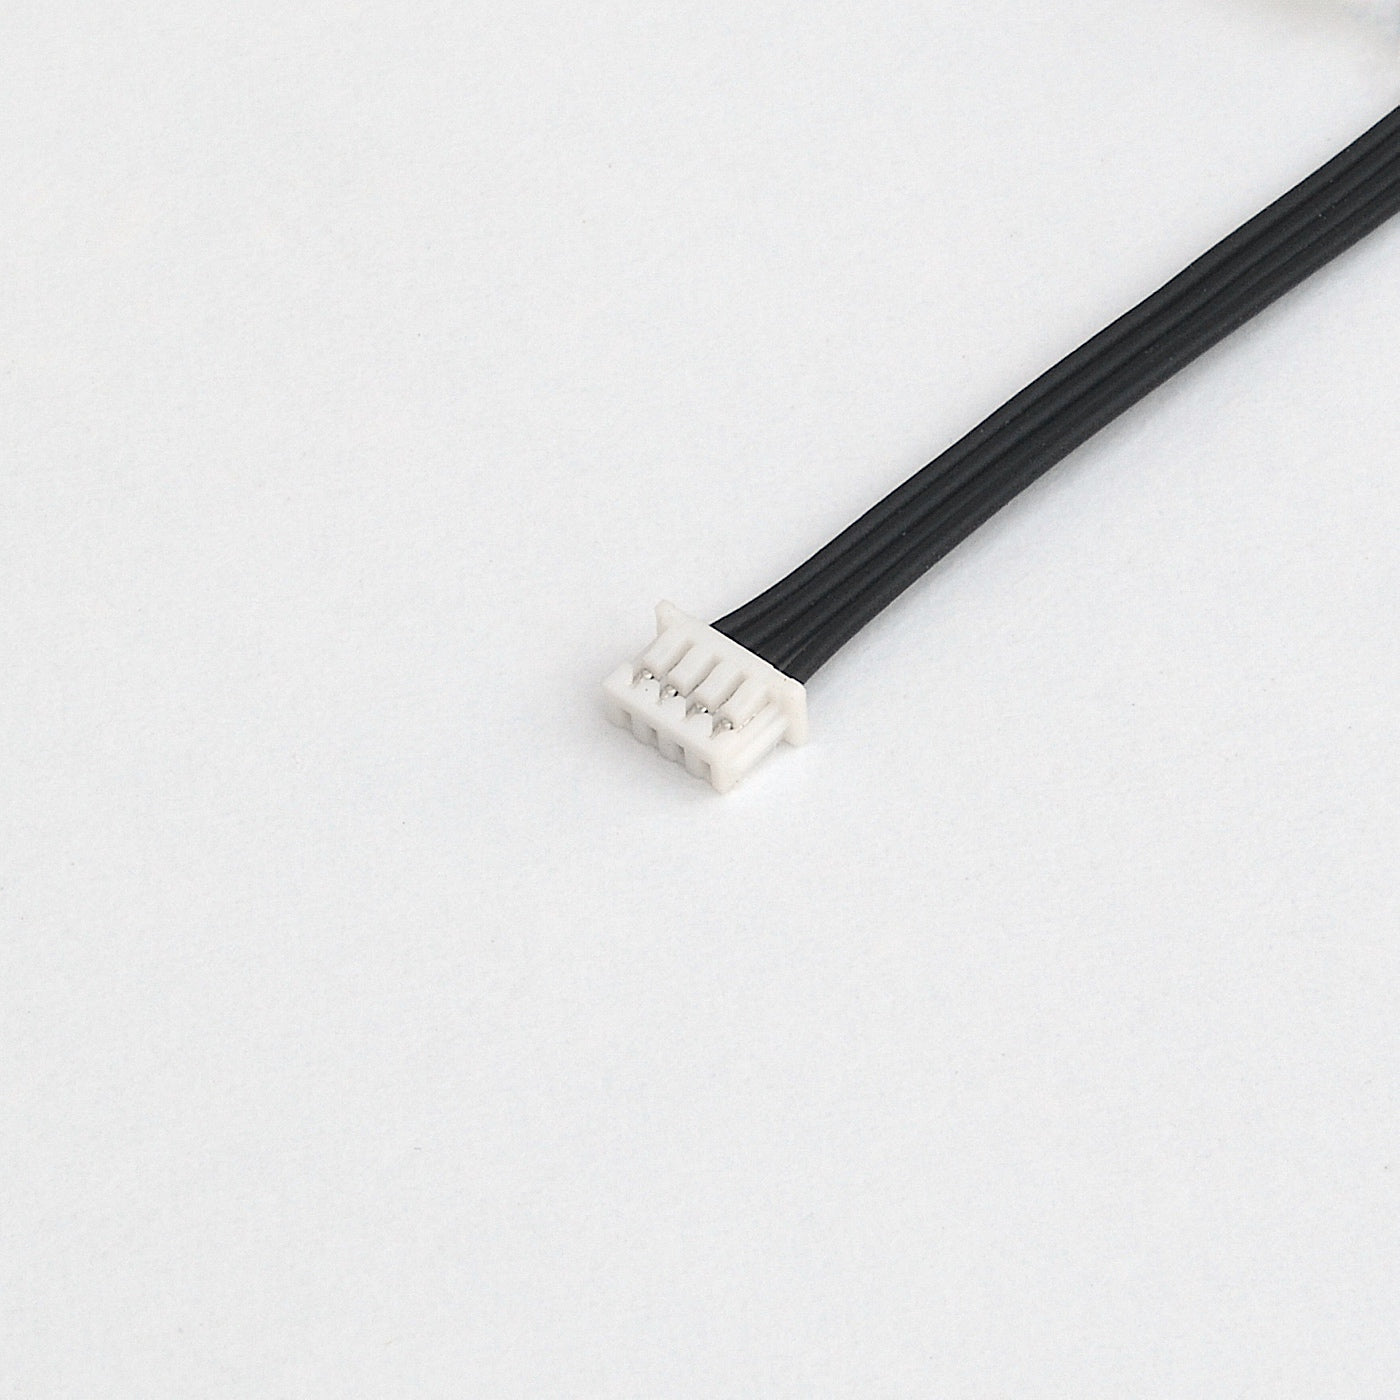 Molex Picoblade 1.25mm 4 pin cable